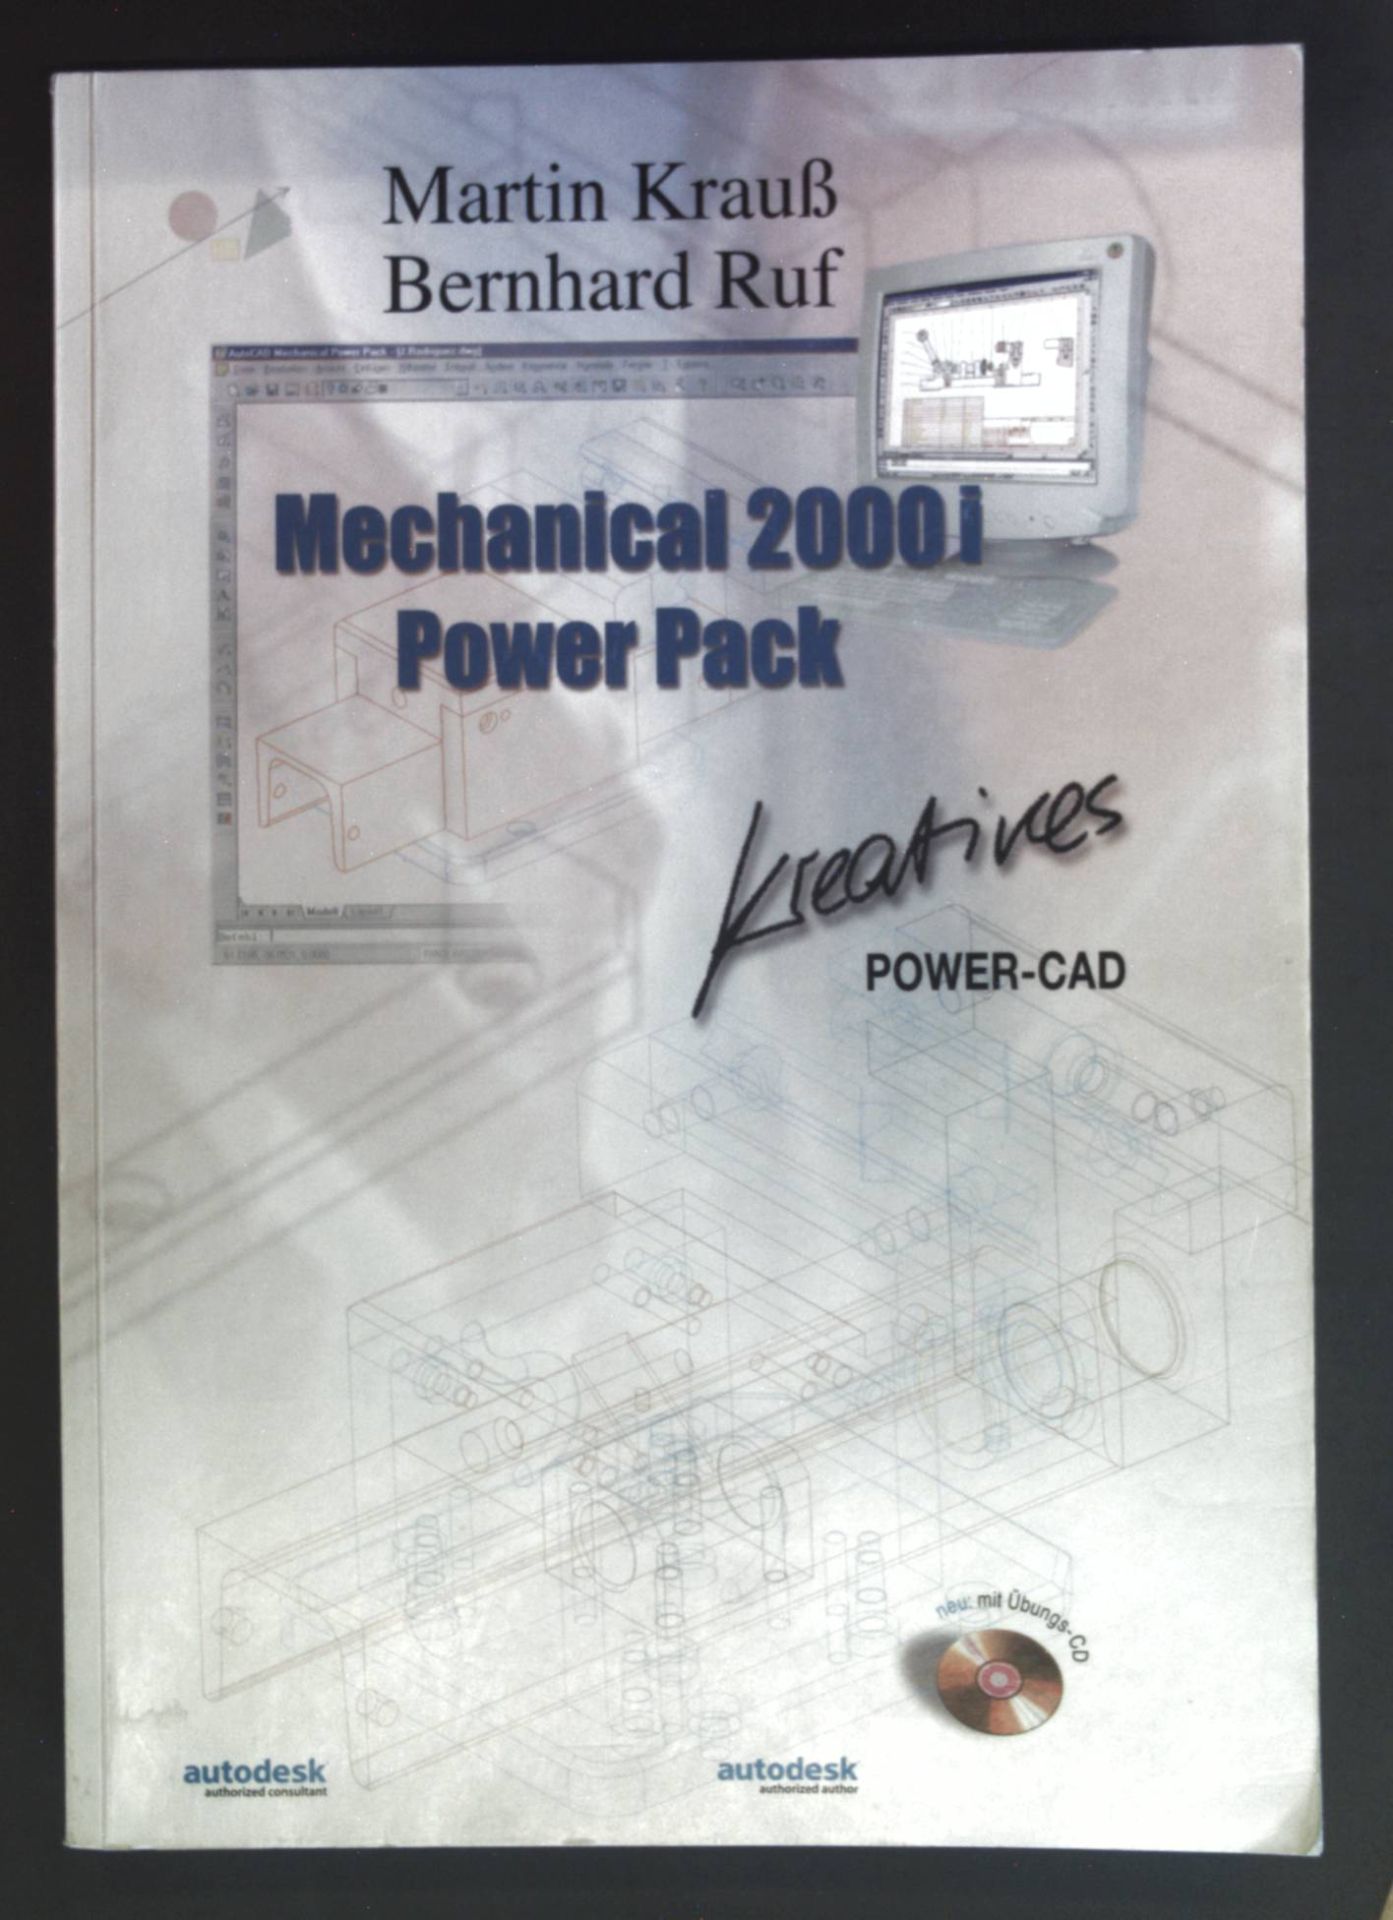 Mechanical 2000 i Power-Pack: Kreatives PowerCAD. - Ruf, Bernhard